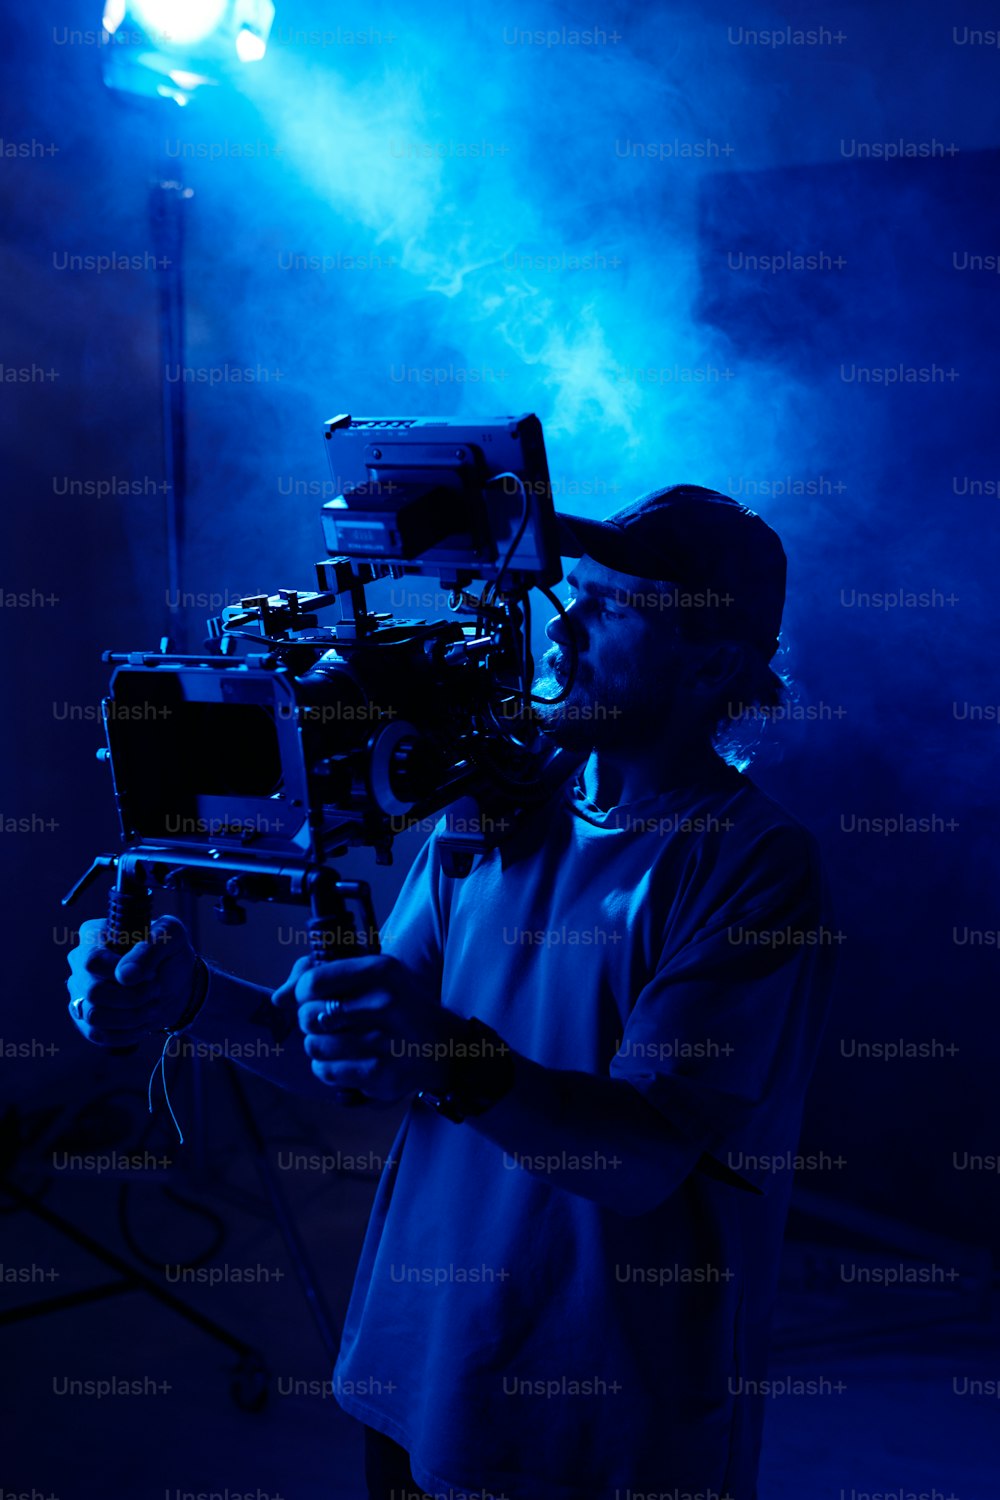 ビデオ撮影中に青い光に照らされ、煙でいっぱいのスタジオでスポットライトを背景に立っている真面目な若いカメラマン